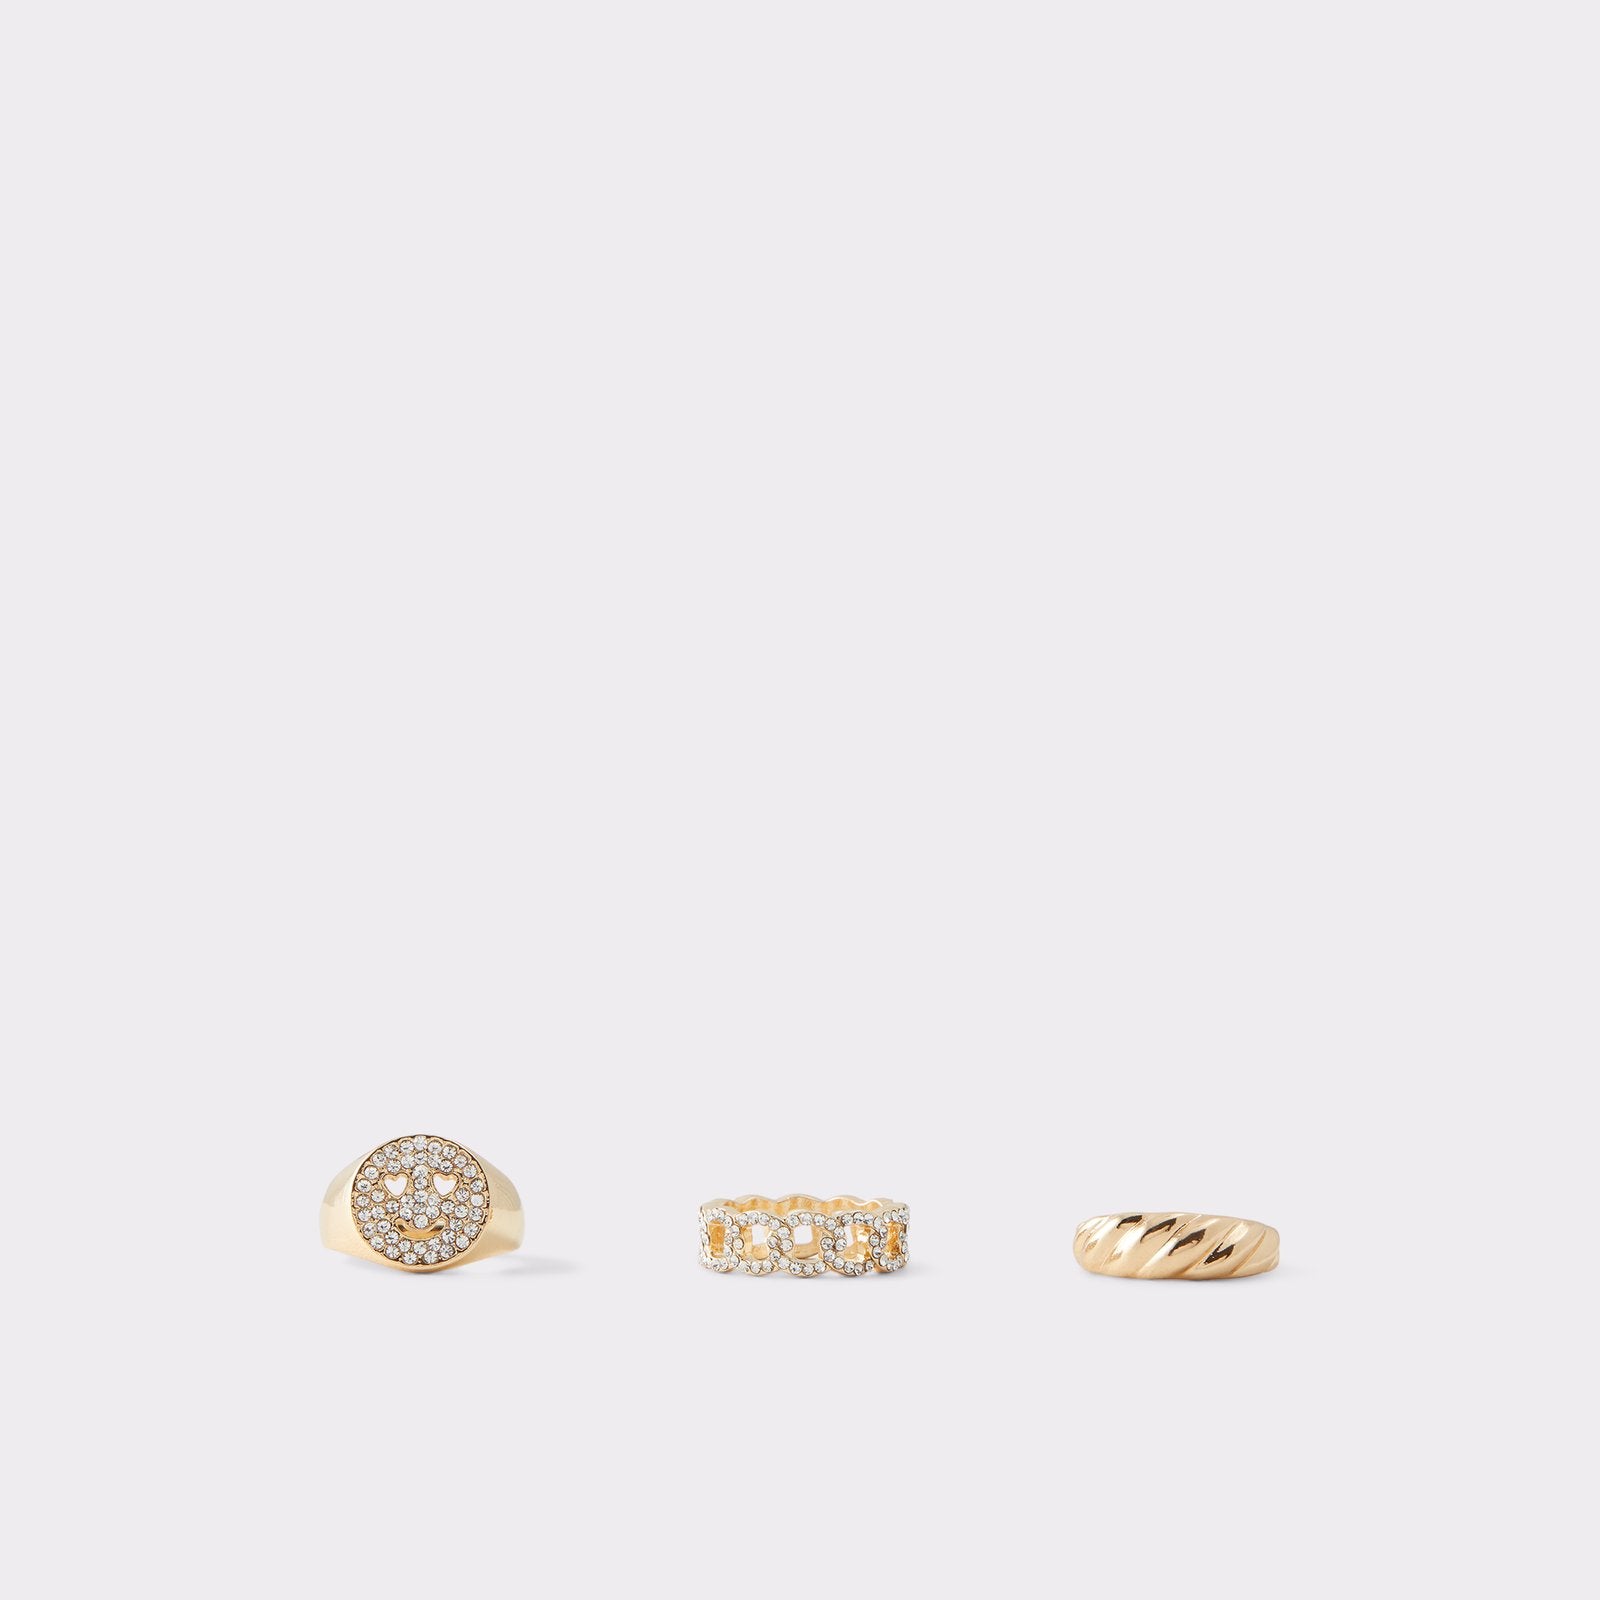 Haia / Ring Accessory - Gold-Clear Multi - ALDO KSA